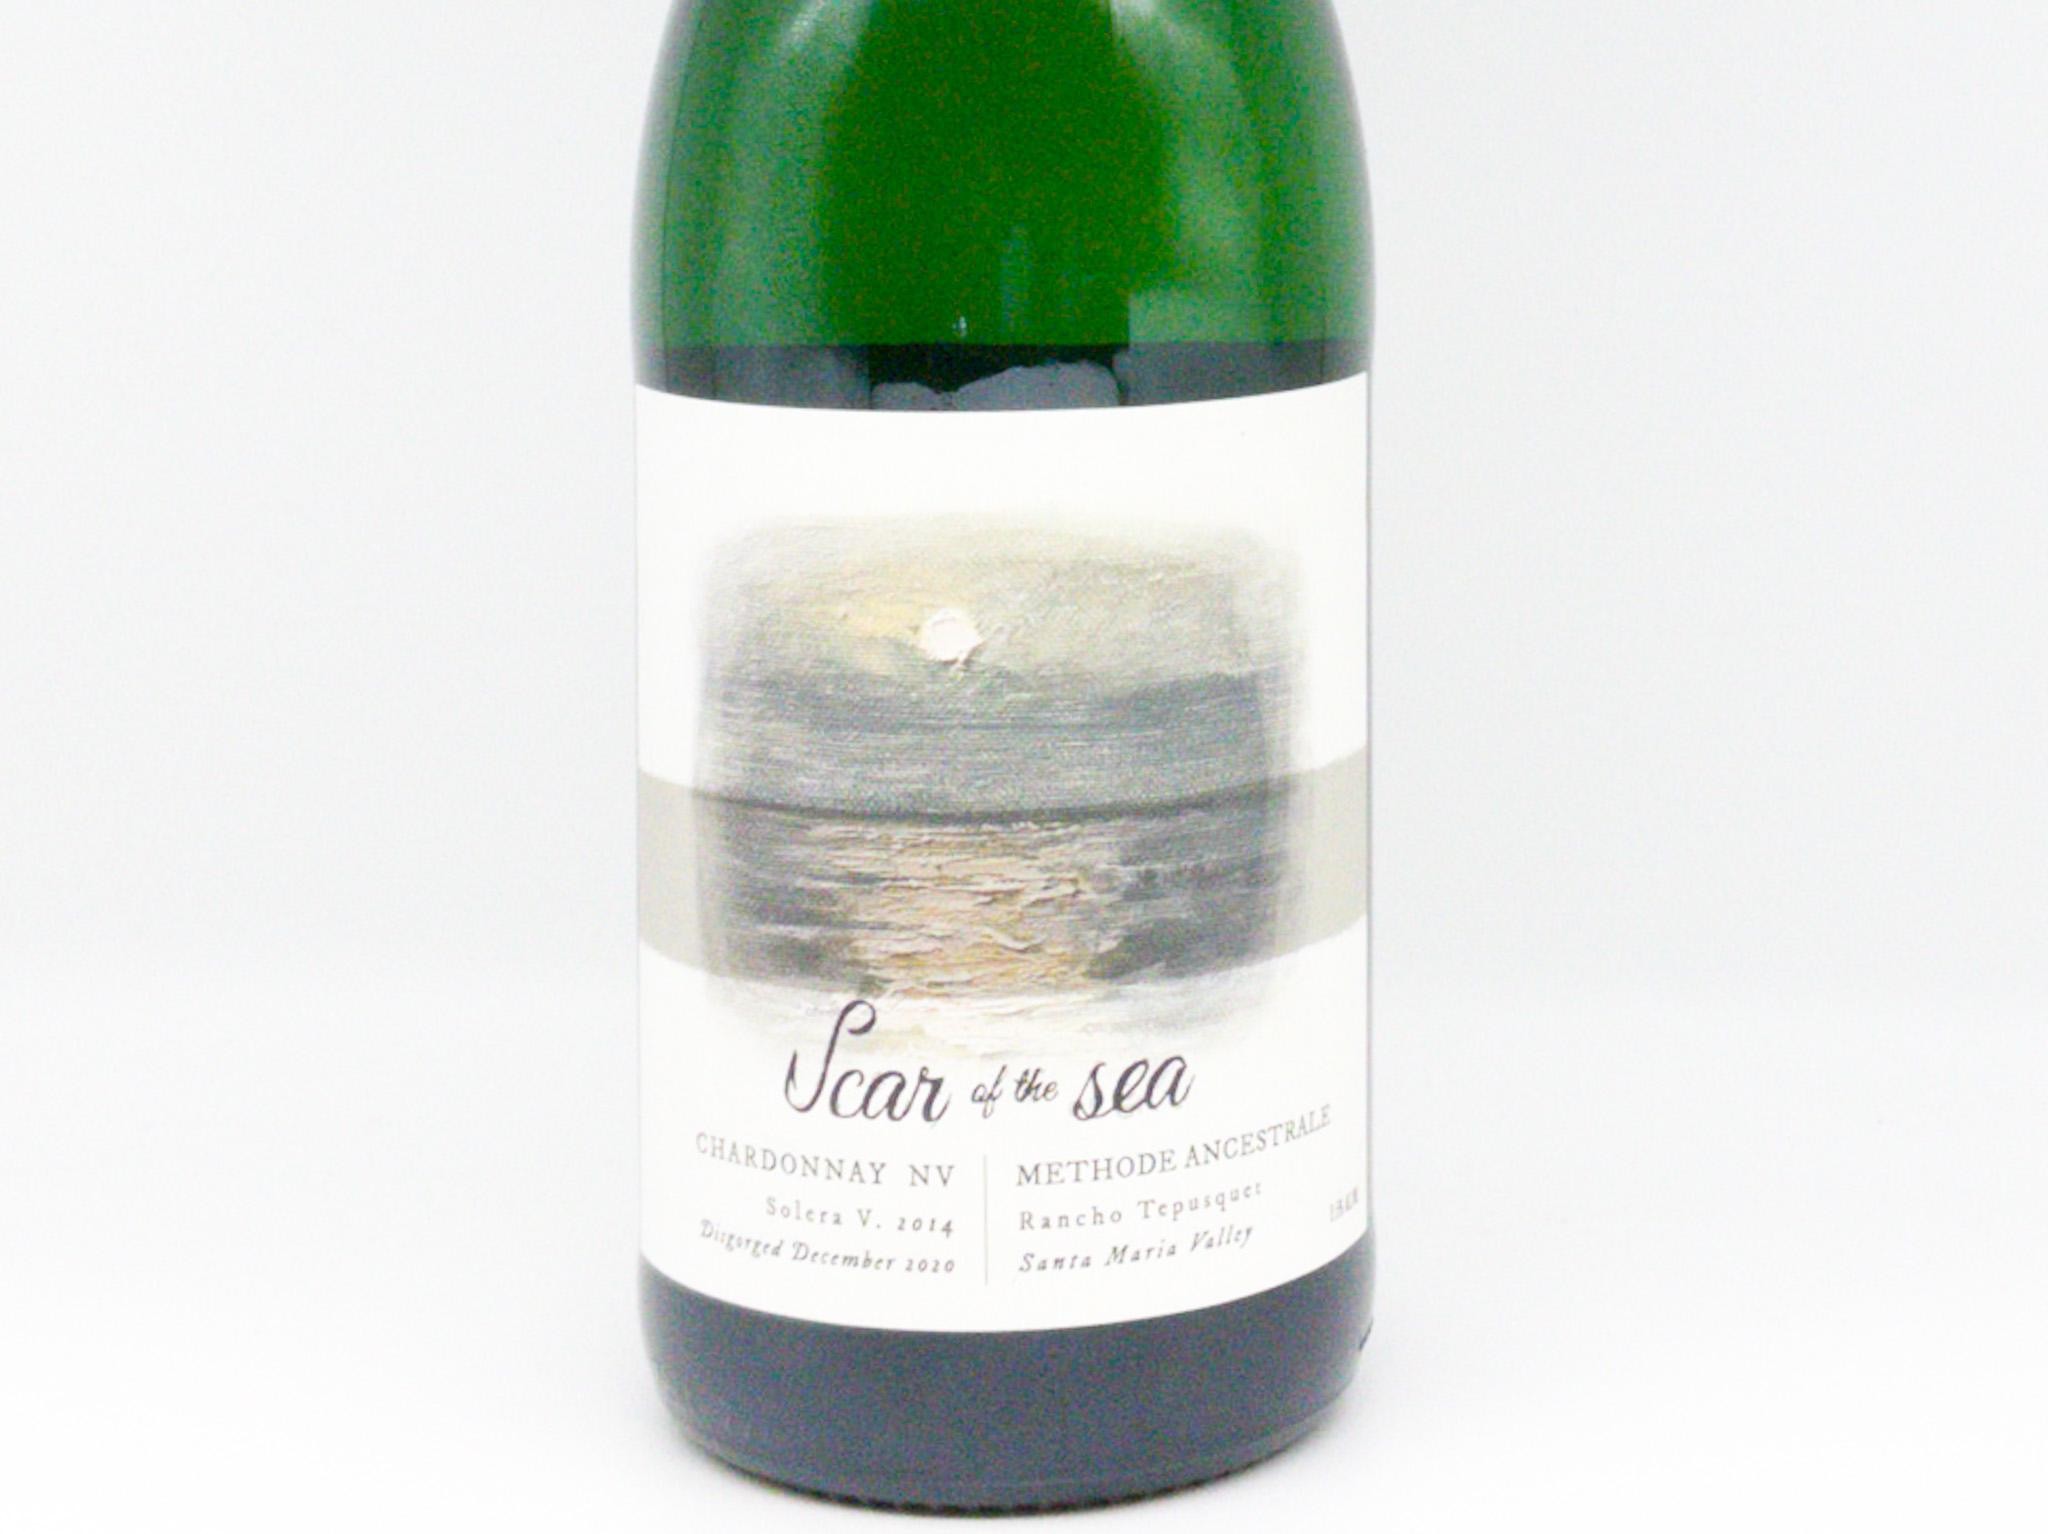 Scar of the Sea - Solera Chardonnay Methode Ancestrale (Sparkling White)